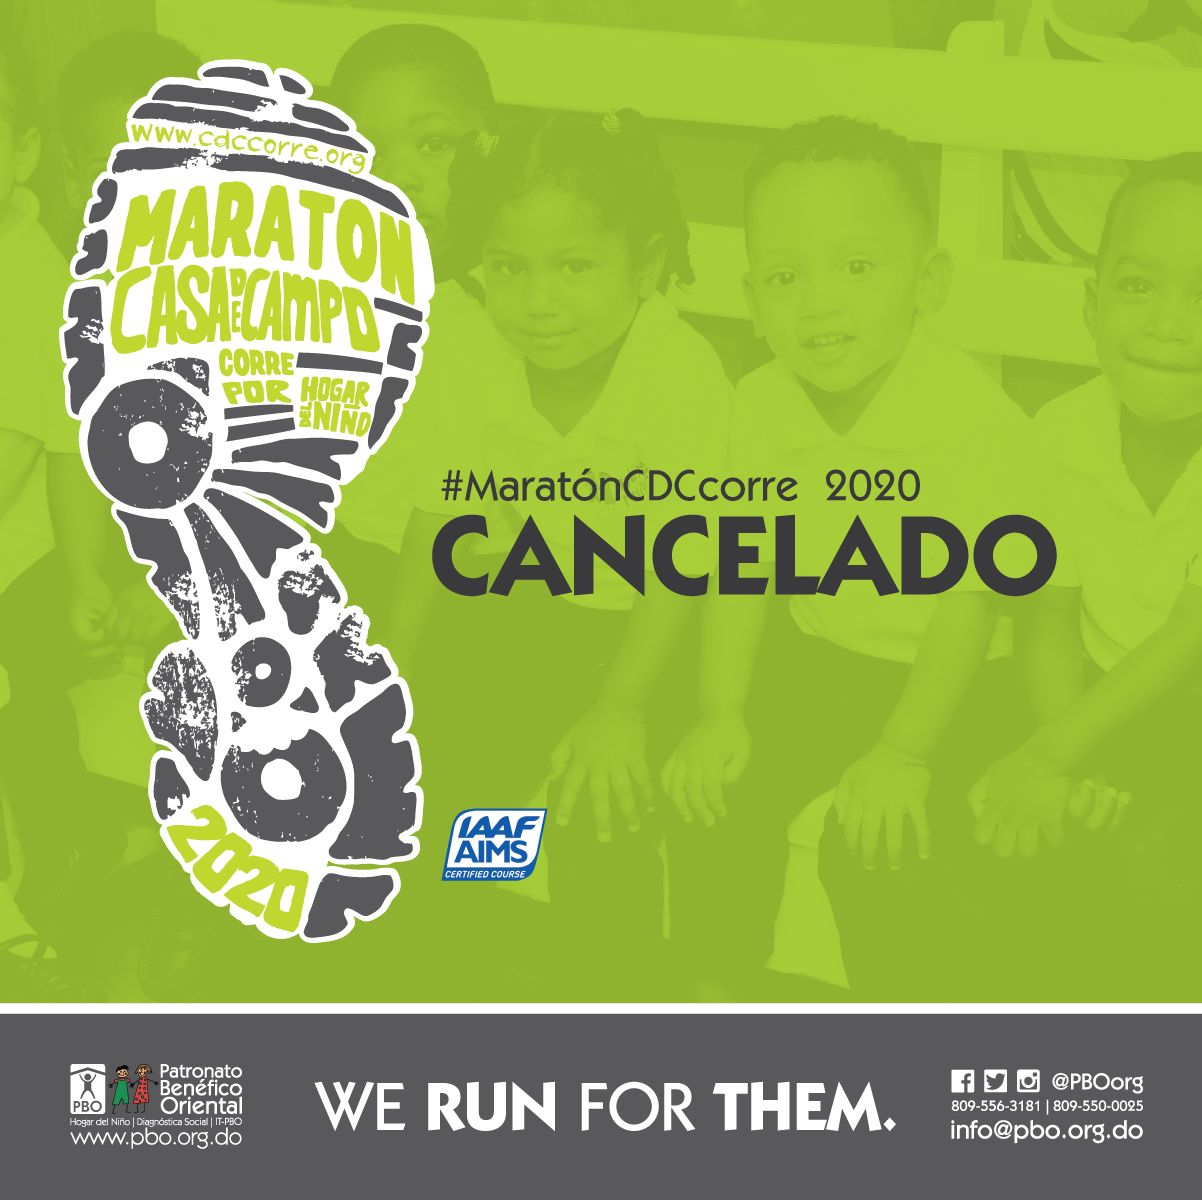 #MaratonCDCcorre2020 CANCELADO